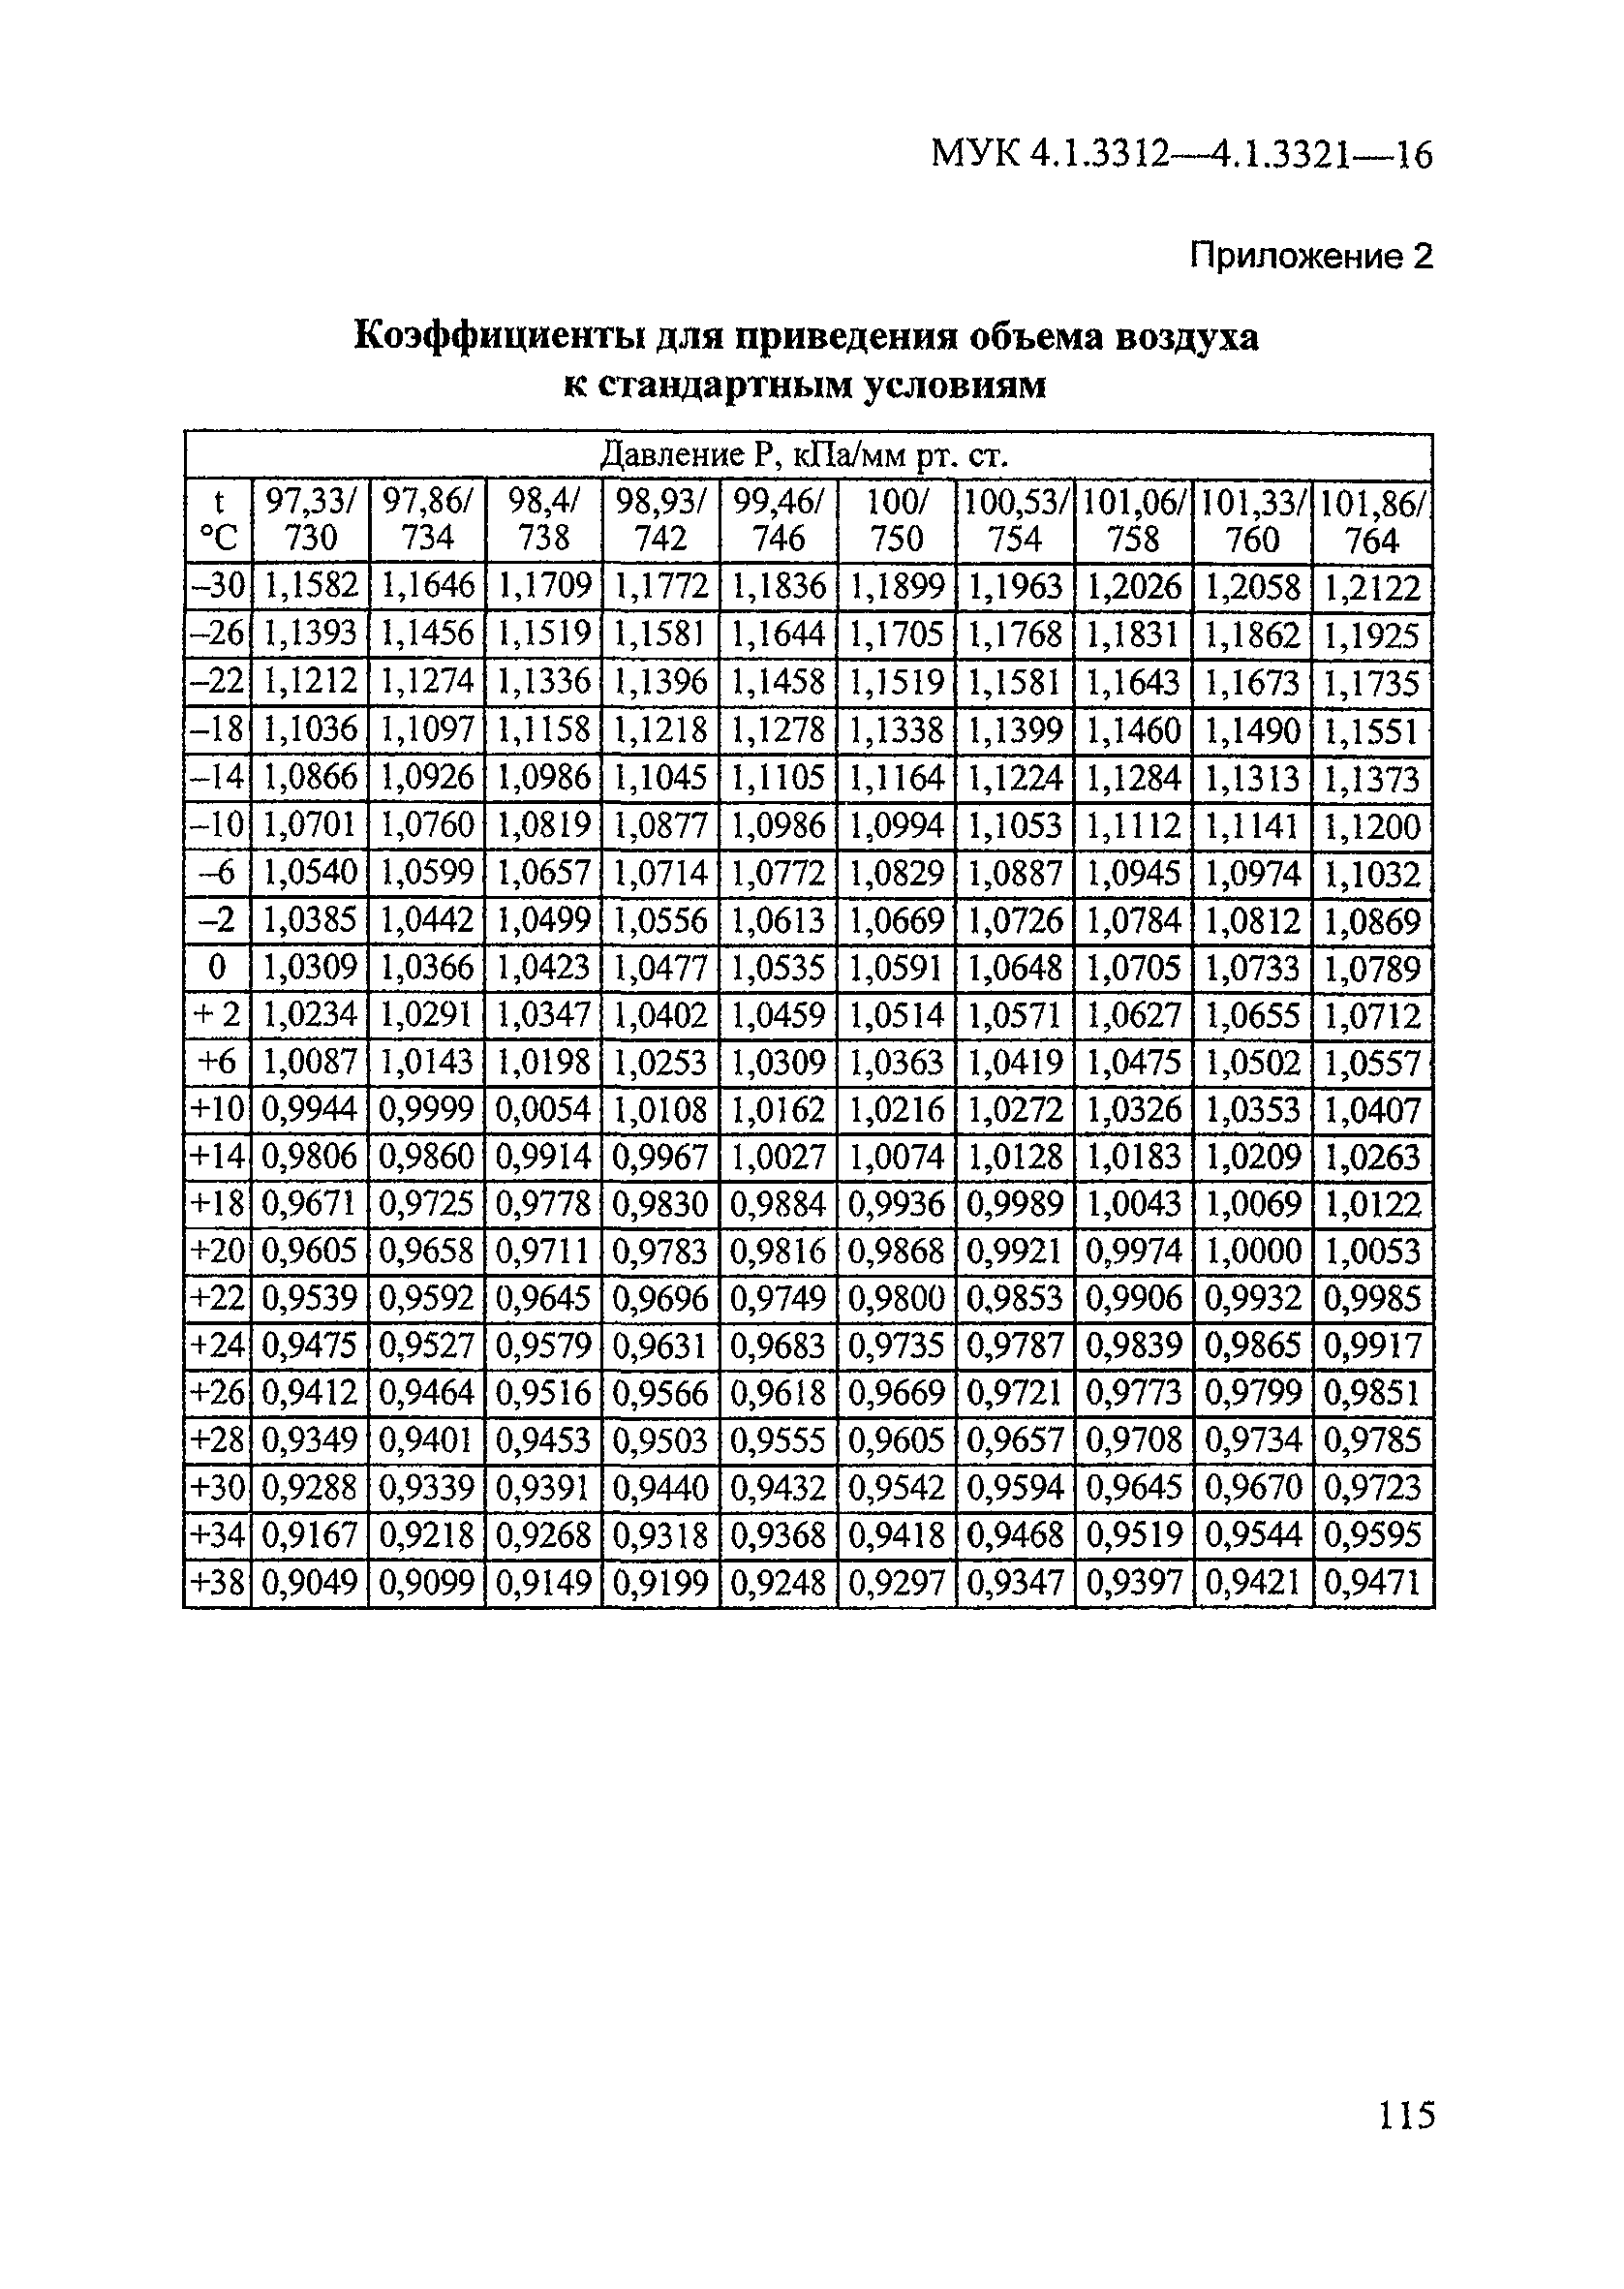 МУК 4.1.3314-15